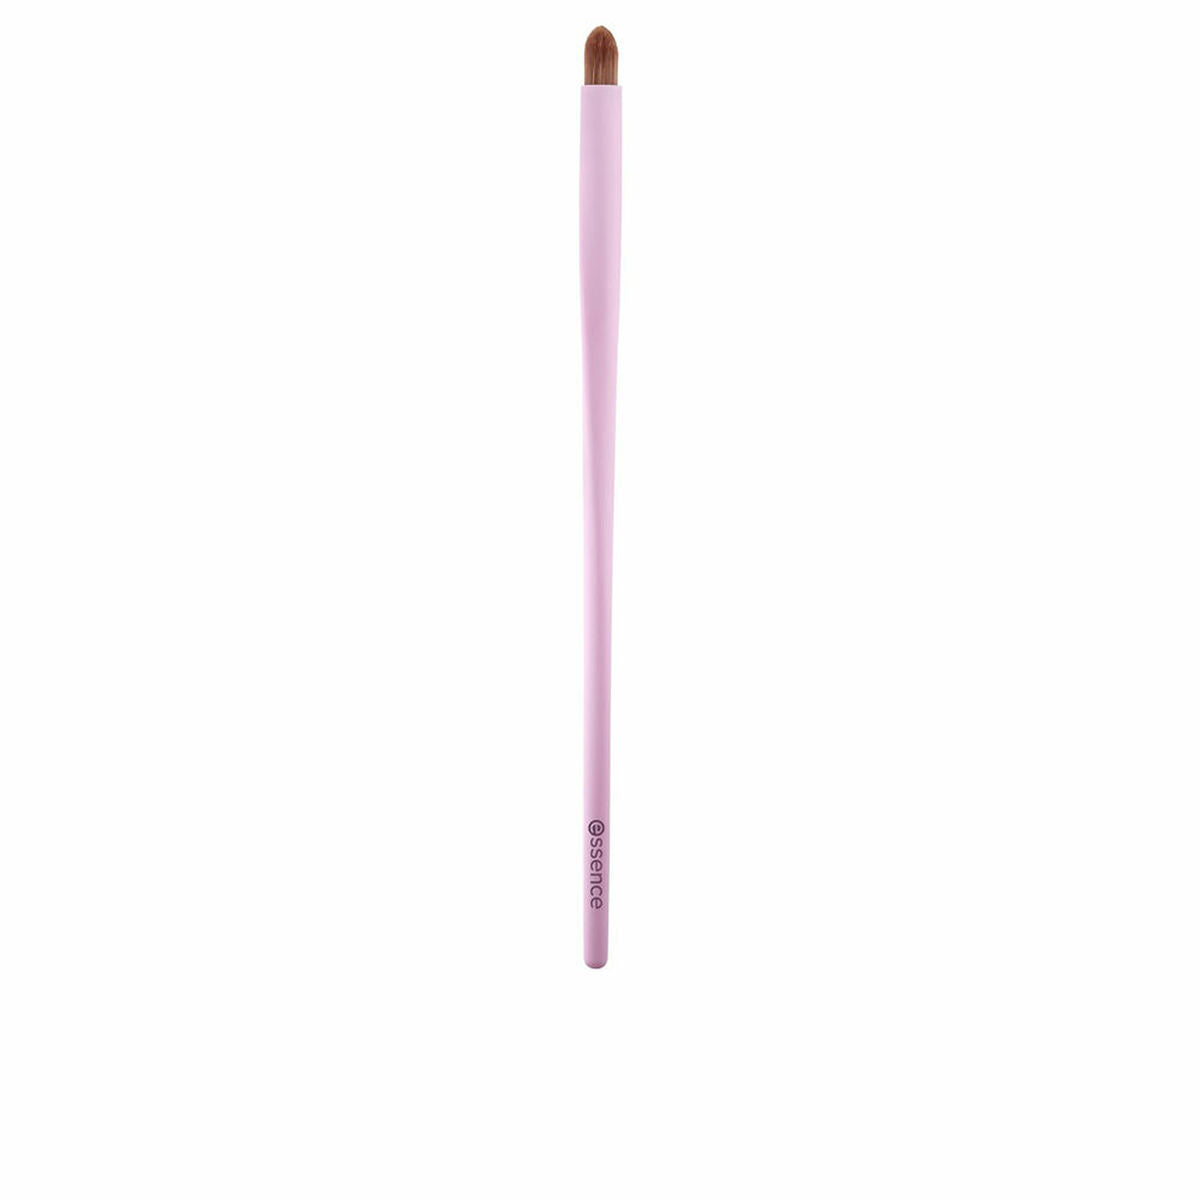 Paintbrush Essence ACCESORIOS Eye Pencil Pink